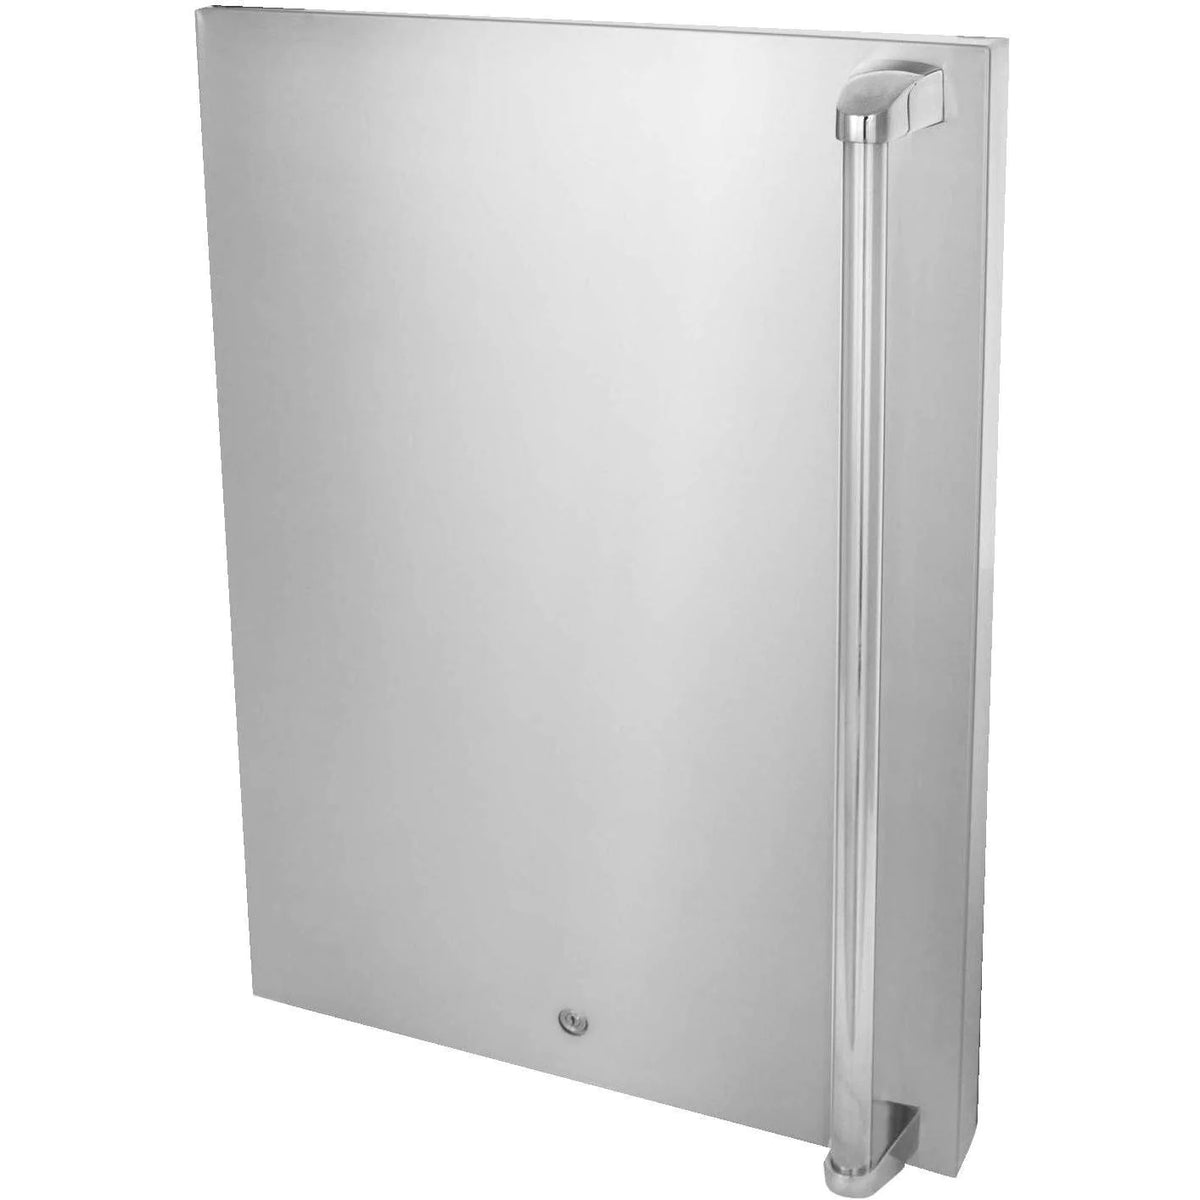 Blaze 20 Inch Left Hinge Outdoor Compact Refrigerator Stainless Steel Door Upgrade Front View